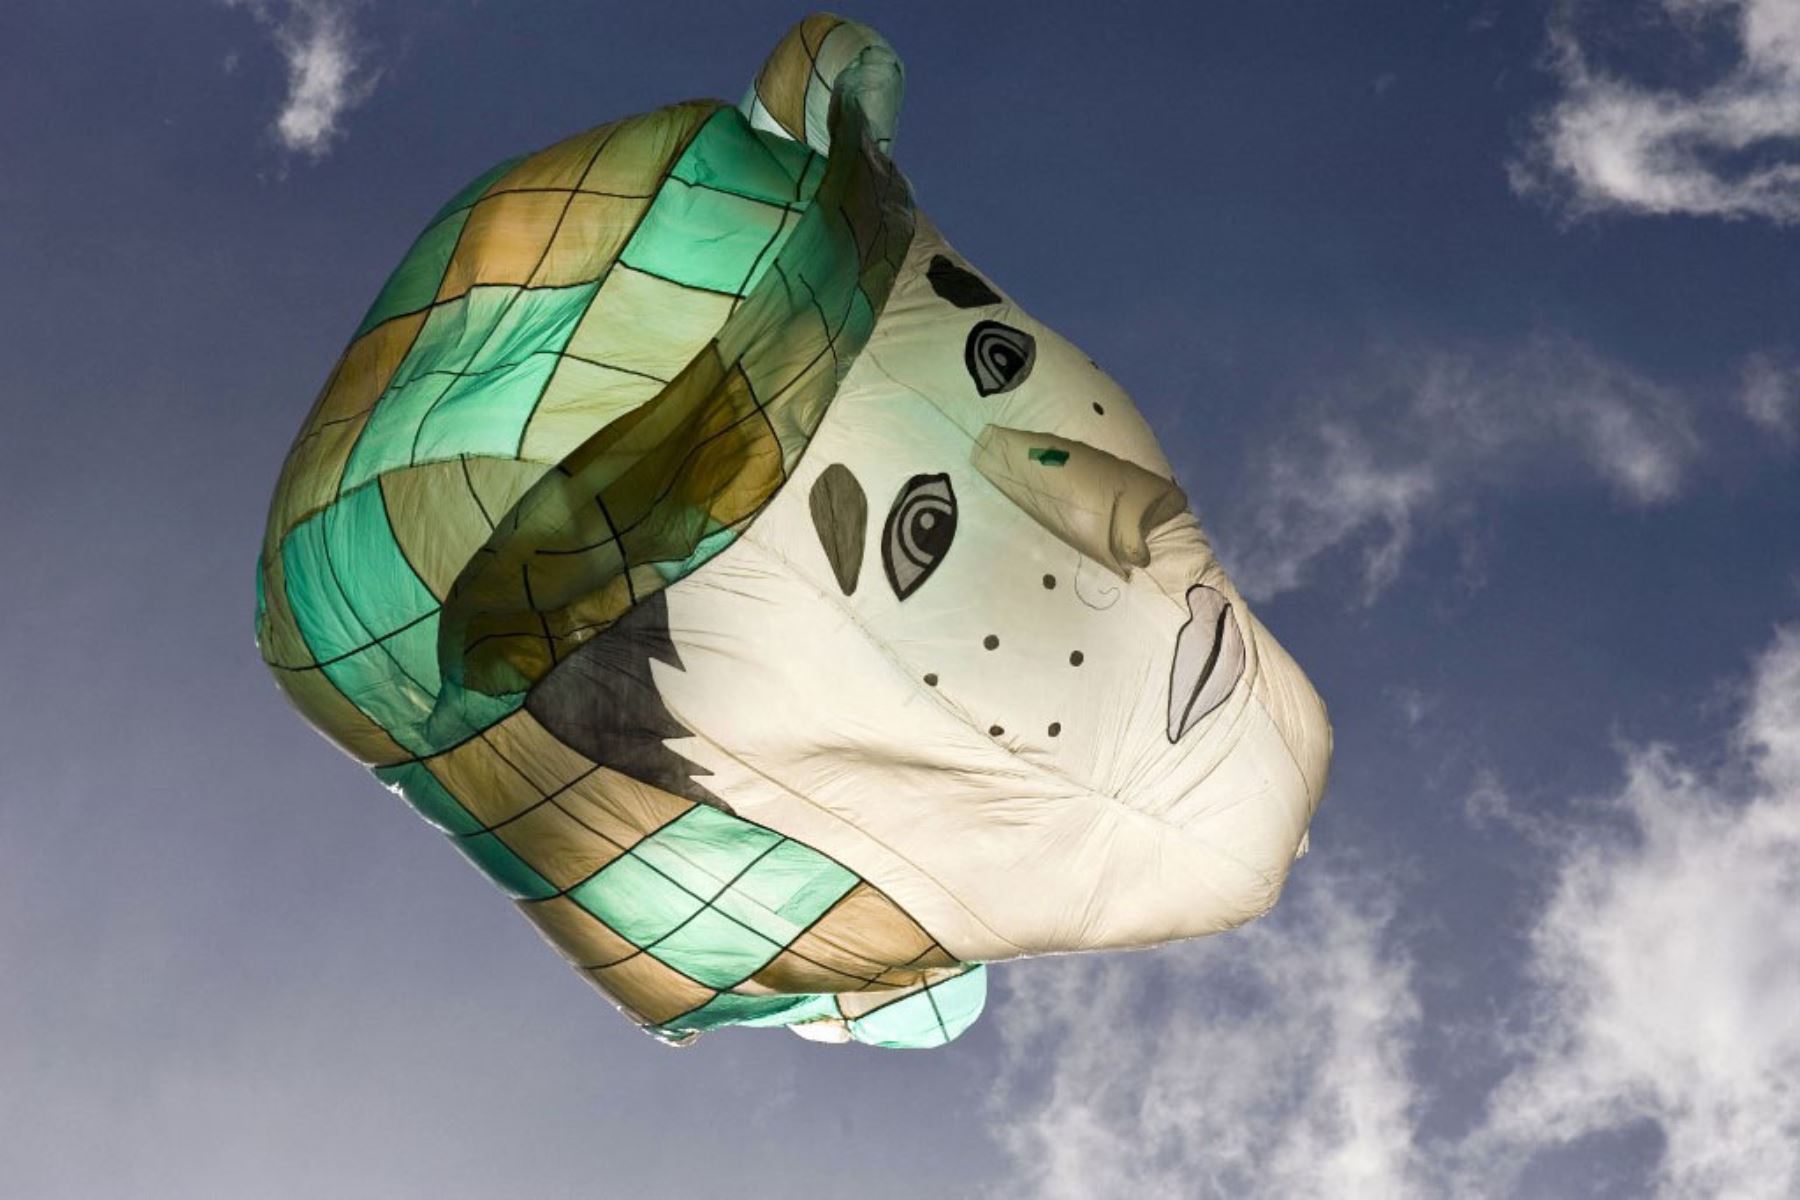 La gente vuela un globo solar que representa a "El Chavo", uno de los personajes más famosos de "Chespirito", el fallecido comediante mexicano Roberto Gómez Bolaños. Foto: AFP